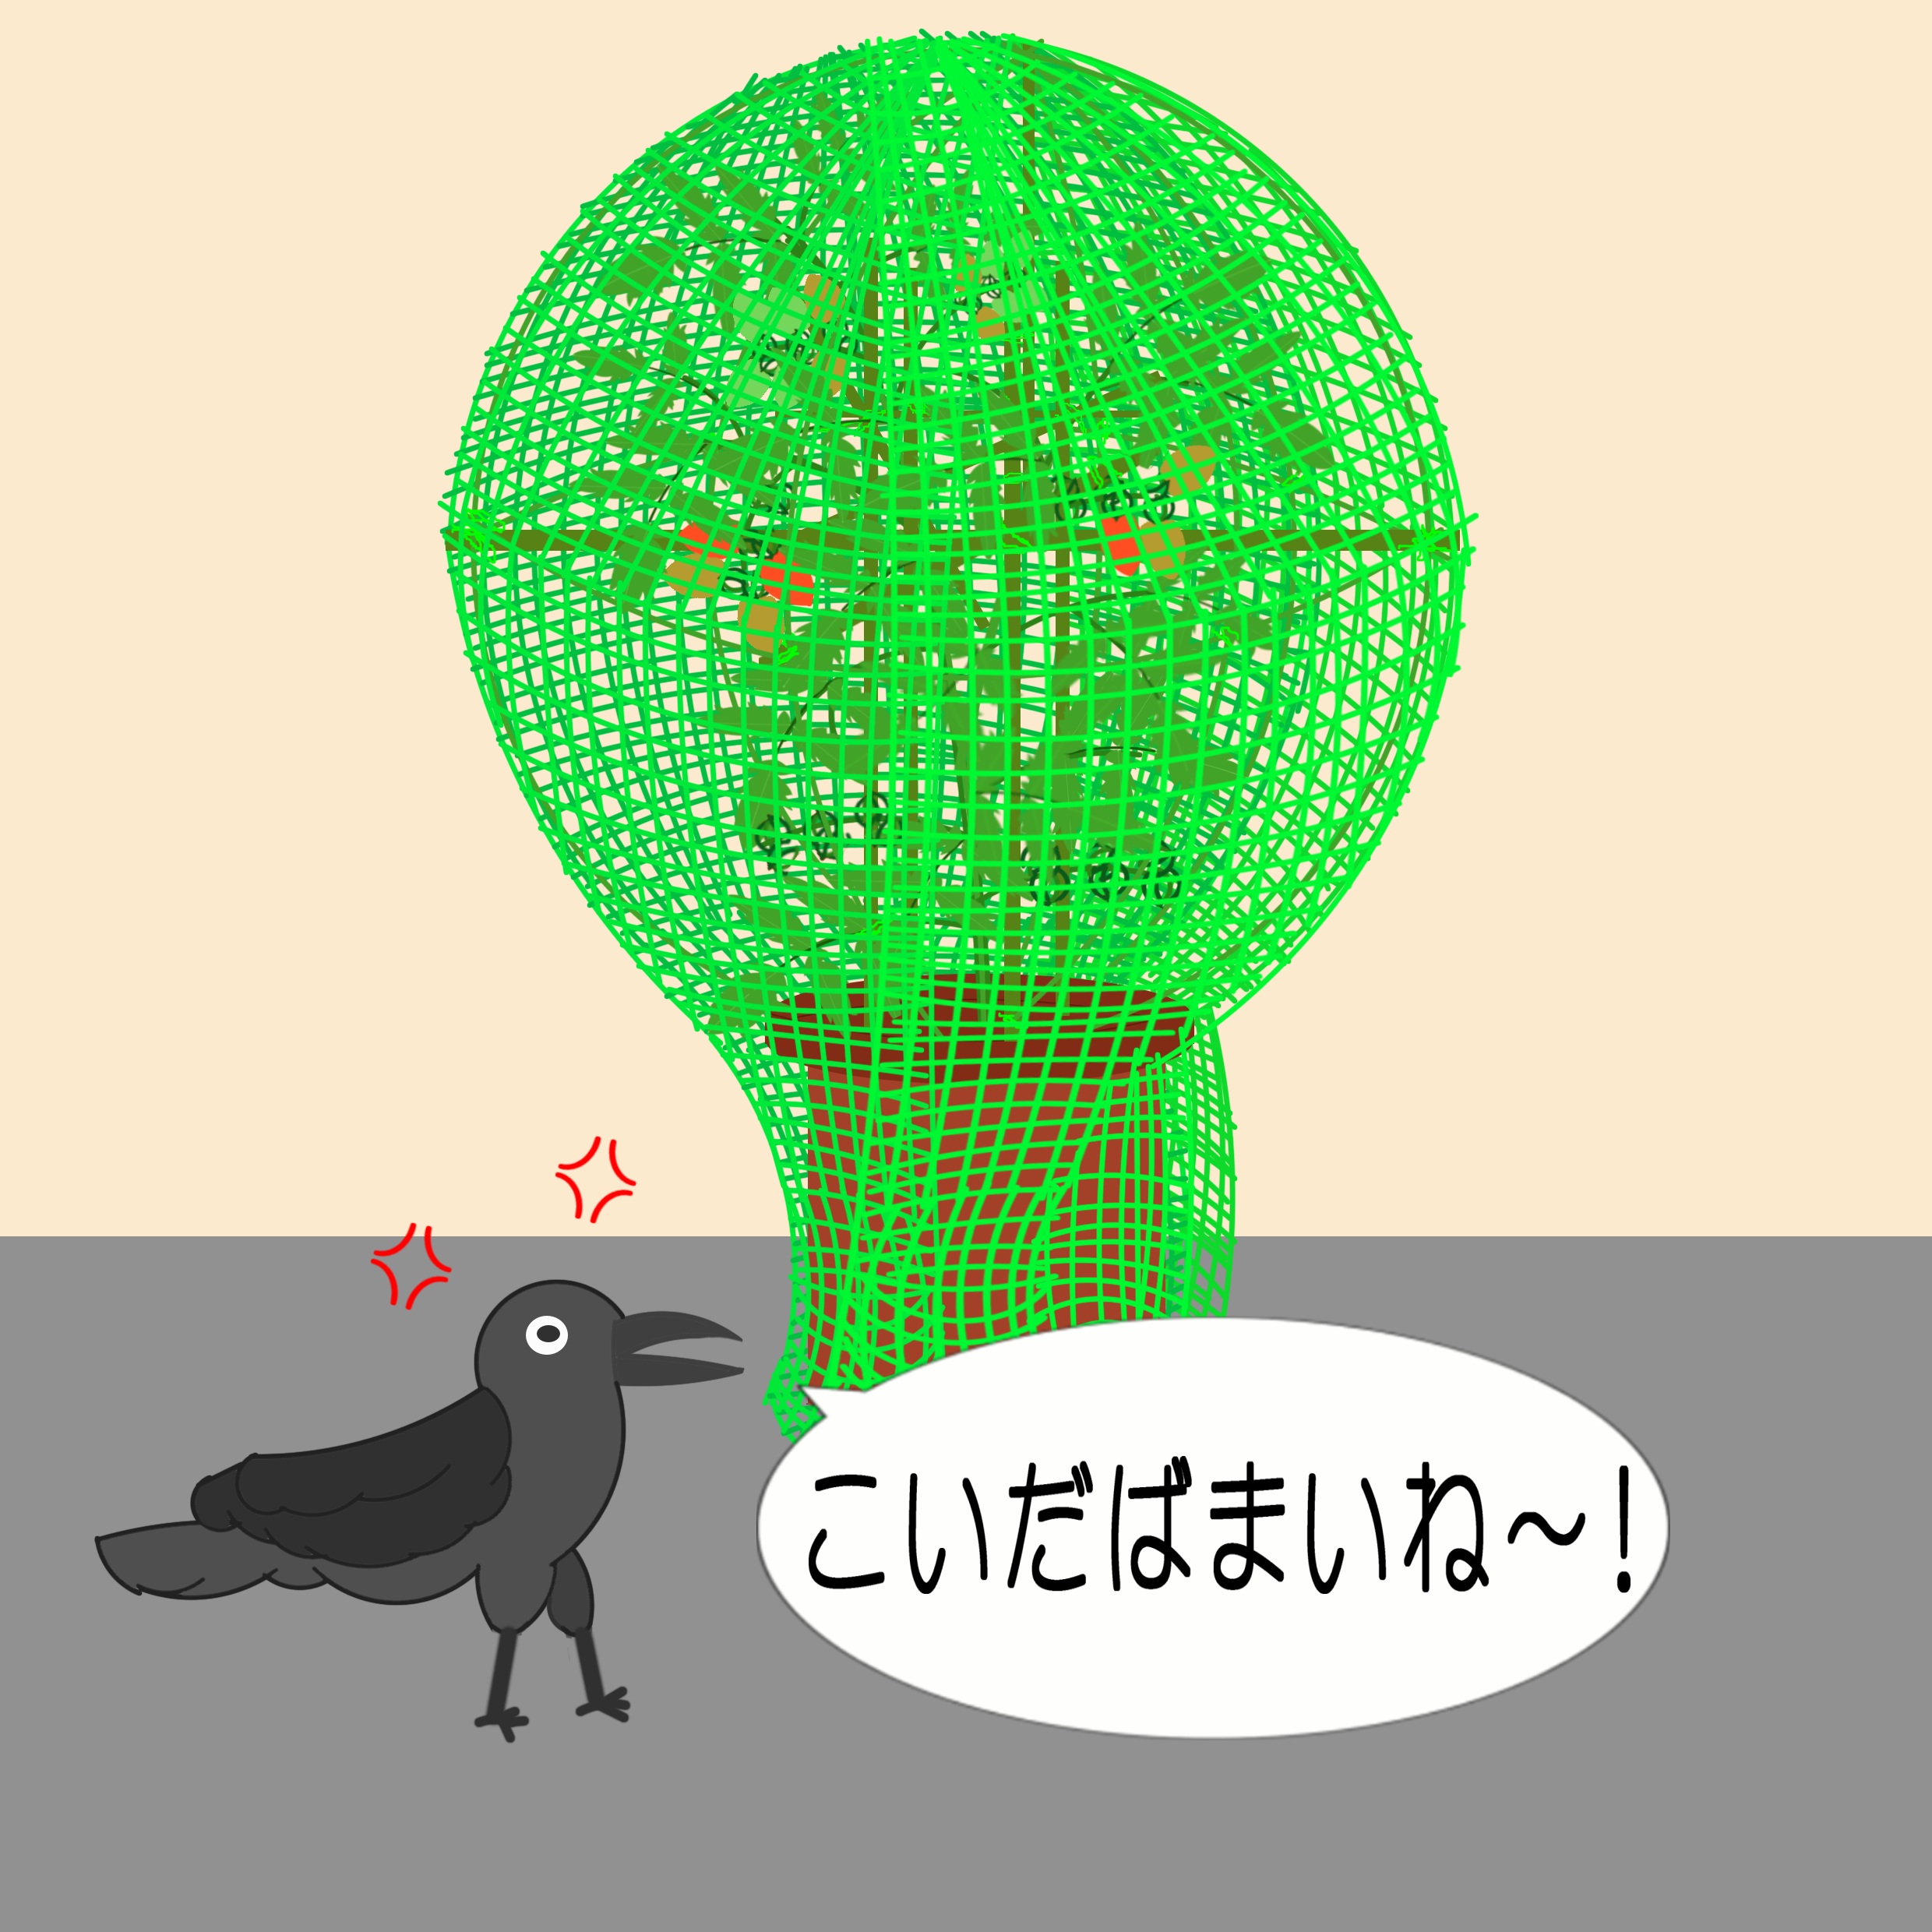 「なまねご」の方言GIFアニメ-逆鳥かご作戦